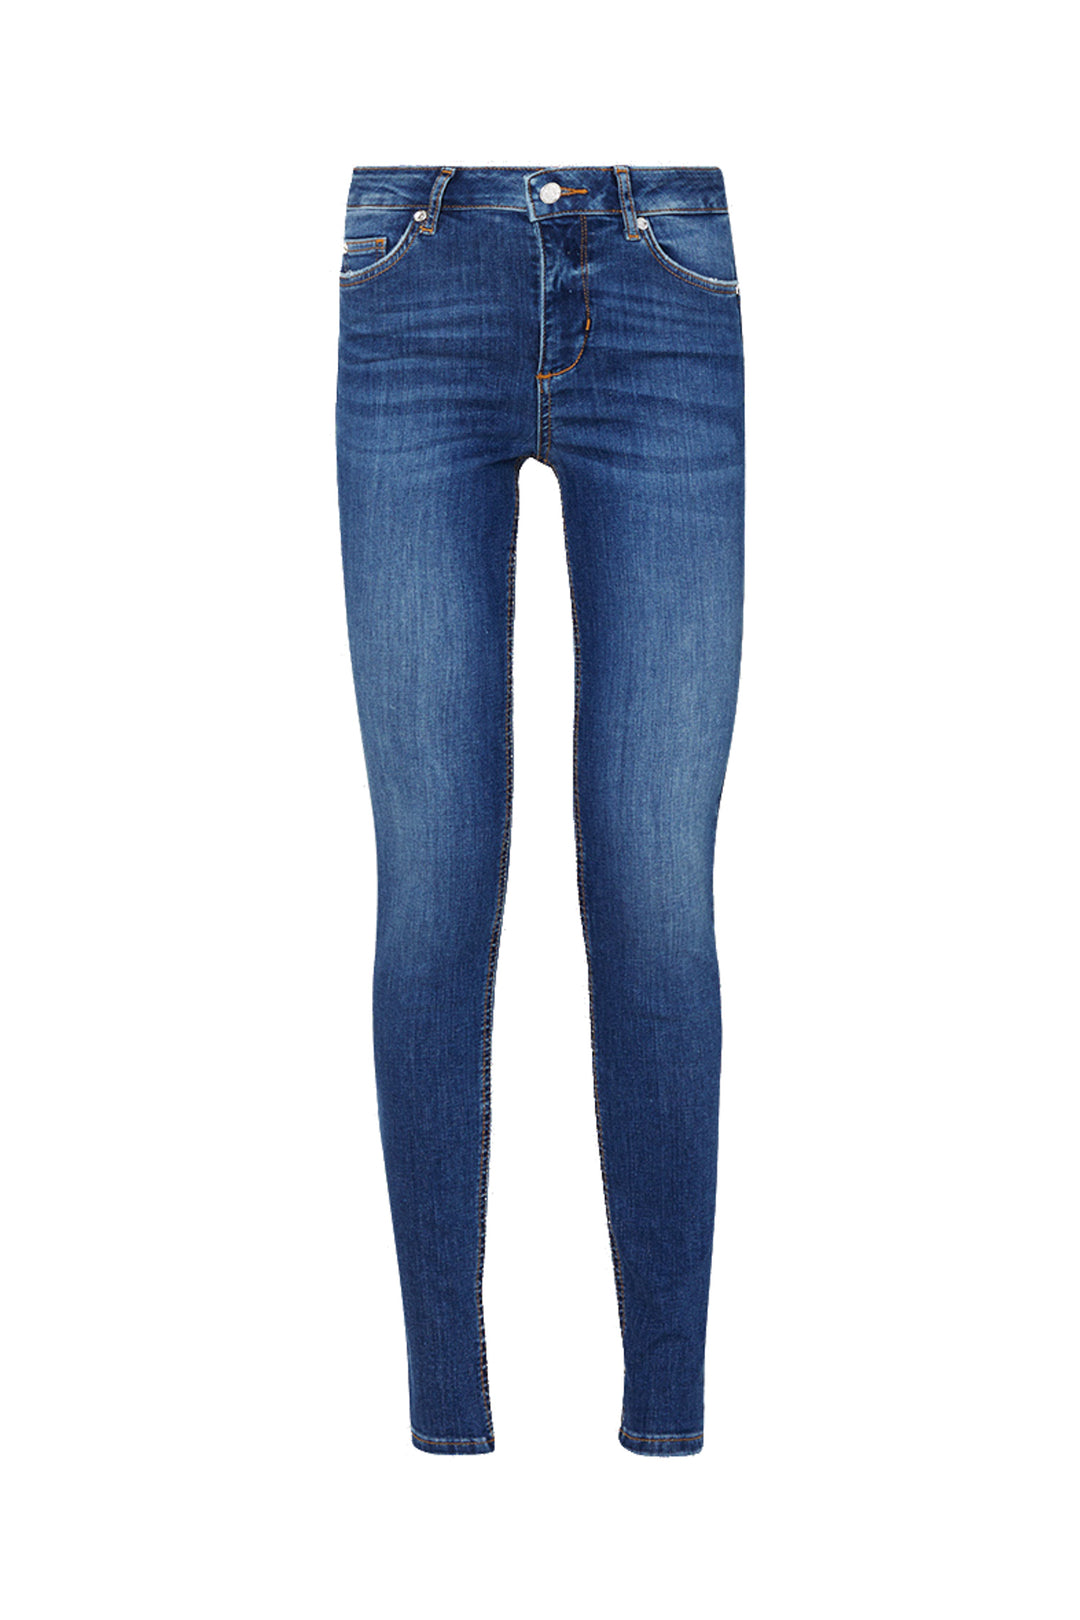 LIU JO Jeans skinny bottom up in denim stretch - Mancinelli 1954